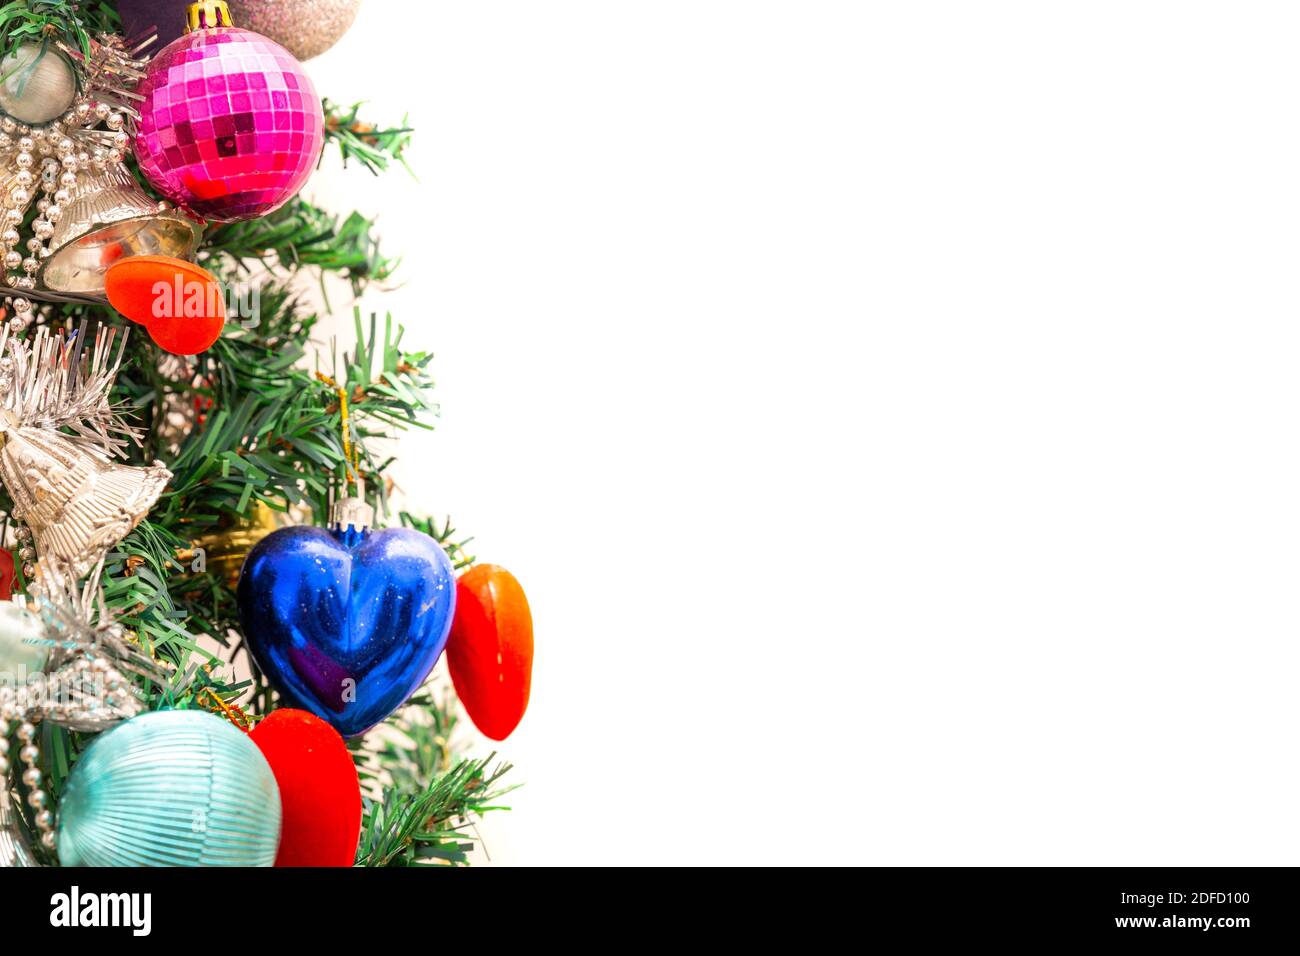 Fermez une partie de décoration d'arbre de Noël, des ornements et des boules. Profondeur de champ. Mise au point sélective. Isolé sur un arrière-plan blanc avec espace de copie. Banque D'Images